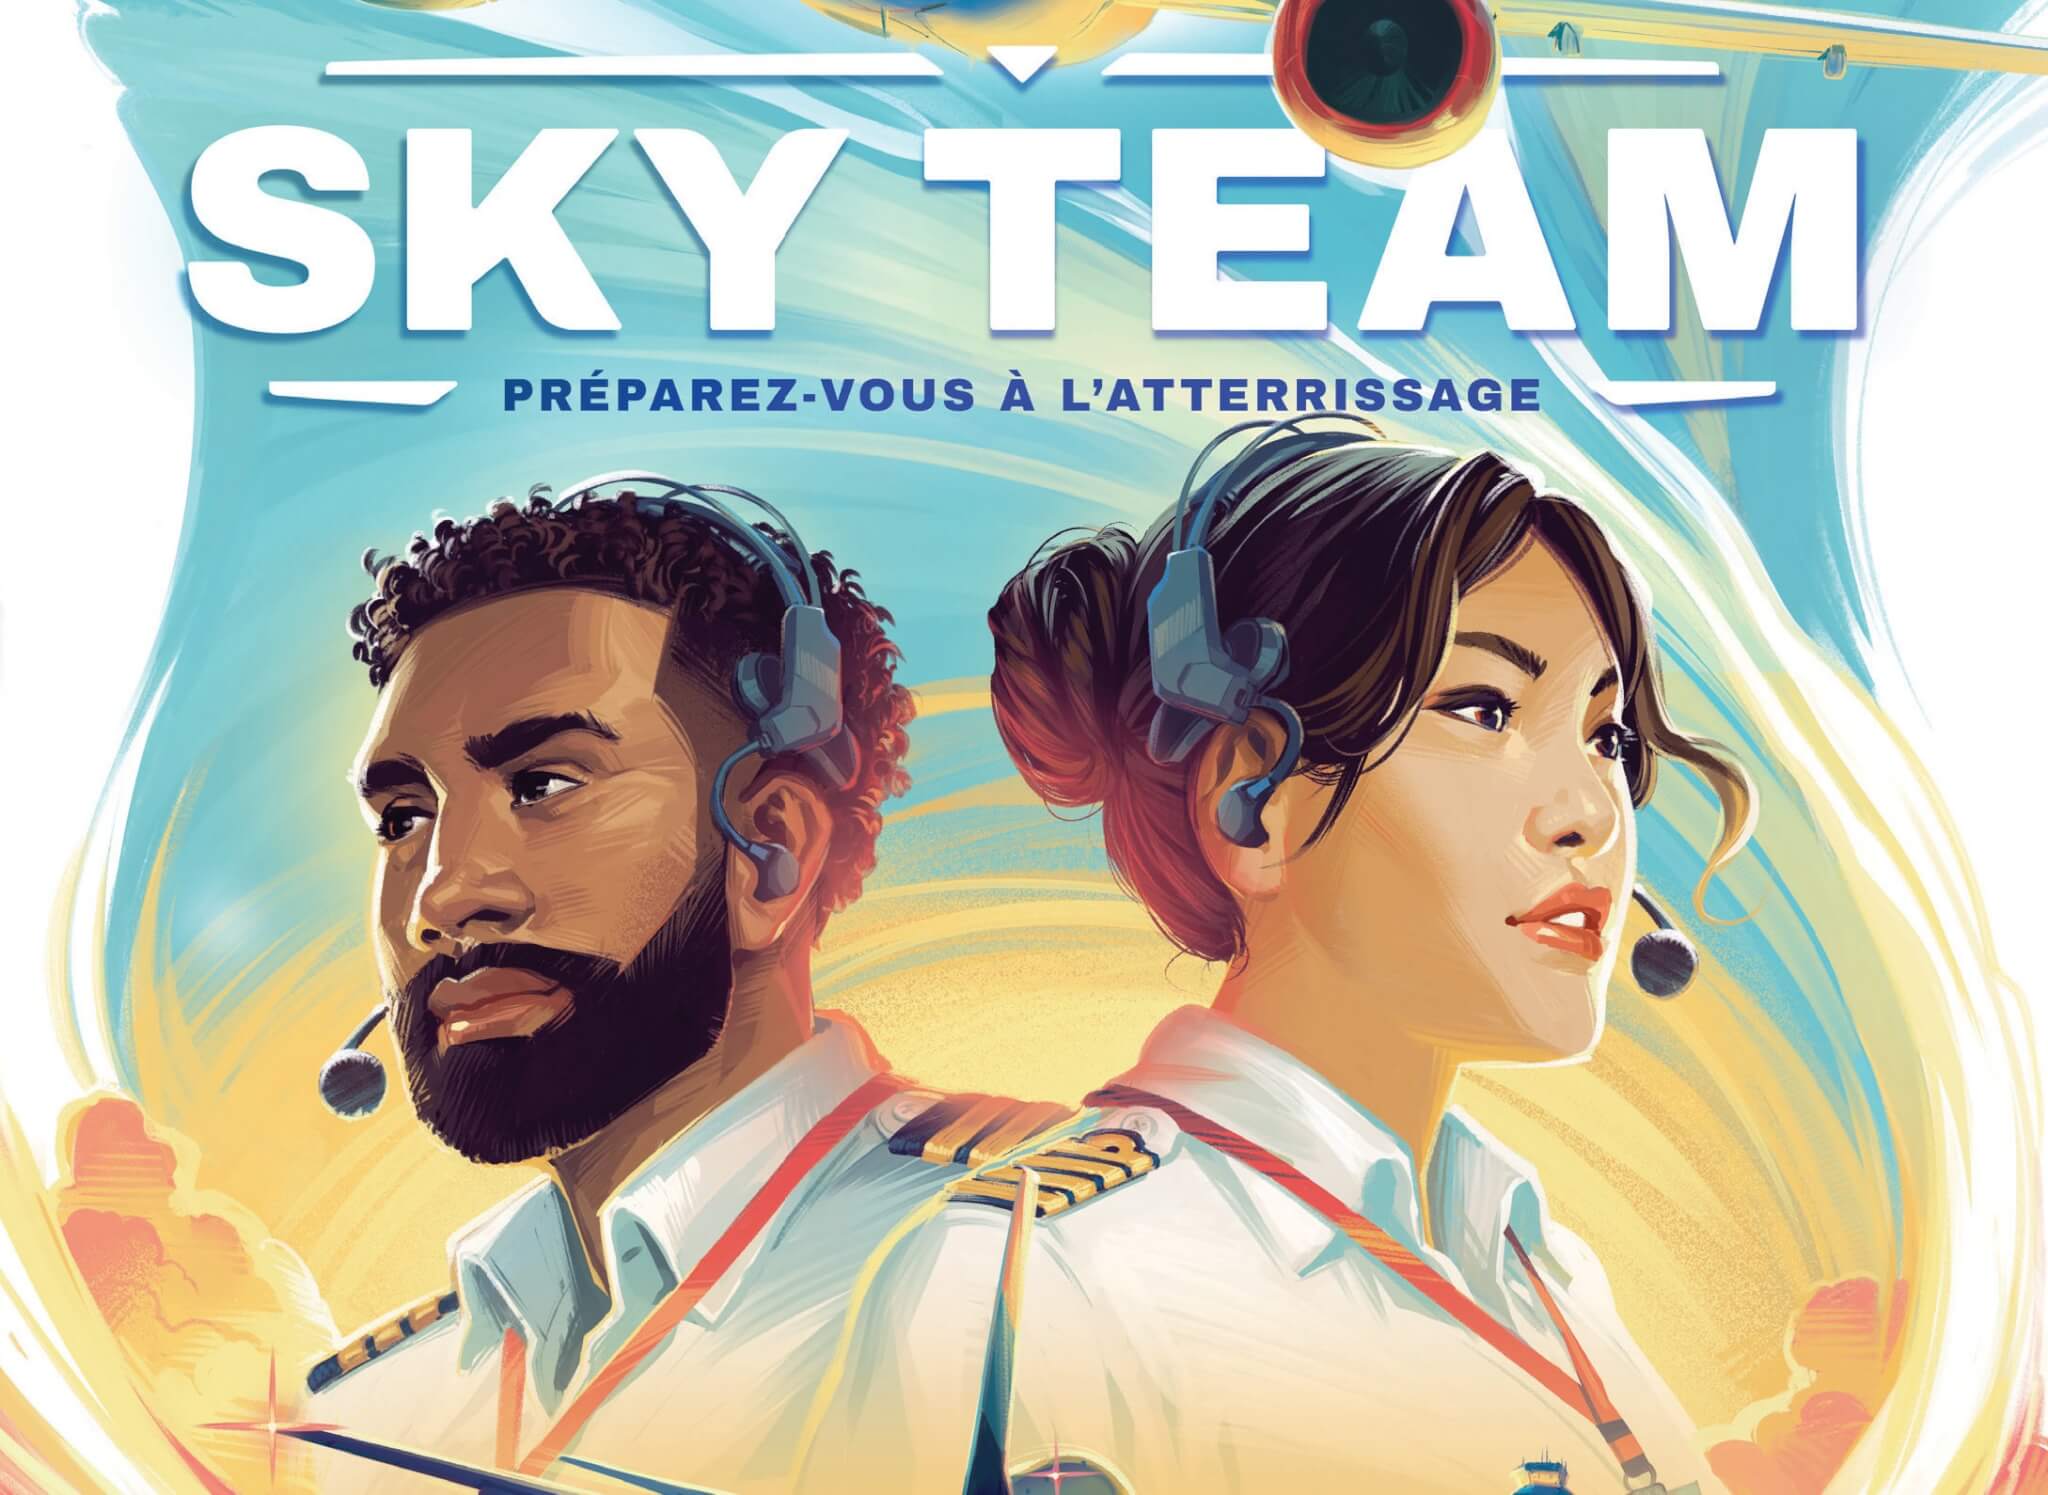 Sky Team - Jeux initiés jeu de société - Akoa Tujou